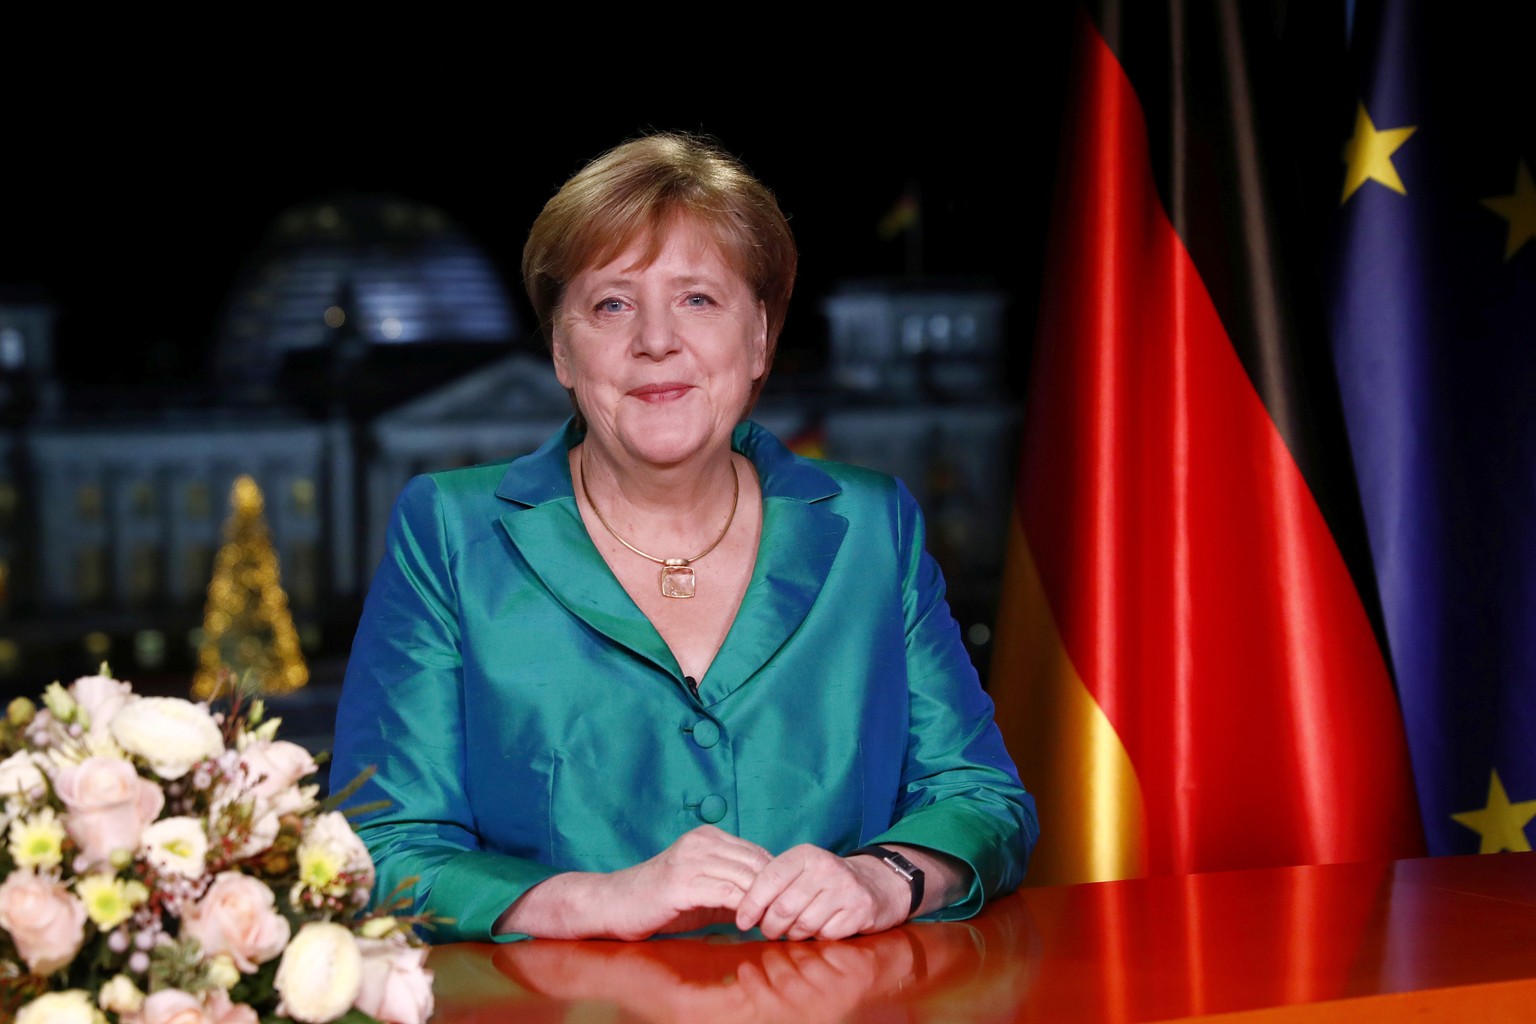 "Wir brauchen mehr denn ja den Mut zu neuem Denken." – Angela Merkel in ihrer Neujahrsansprache.